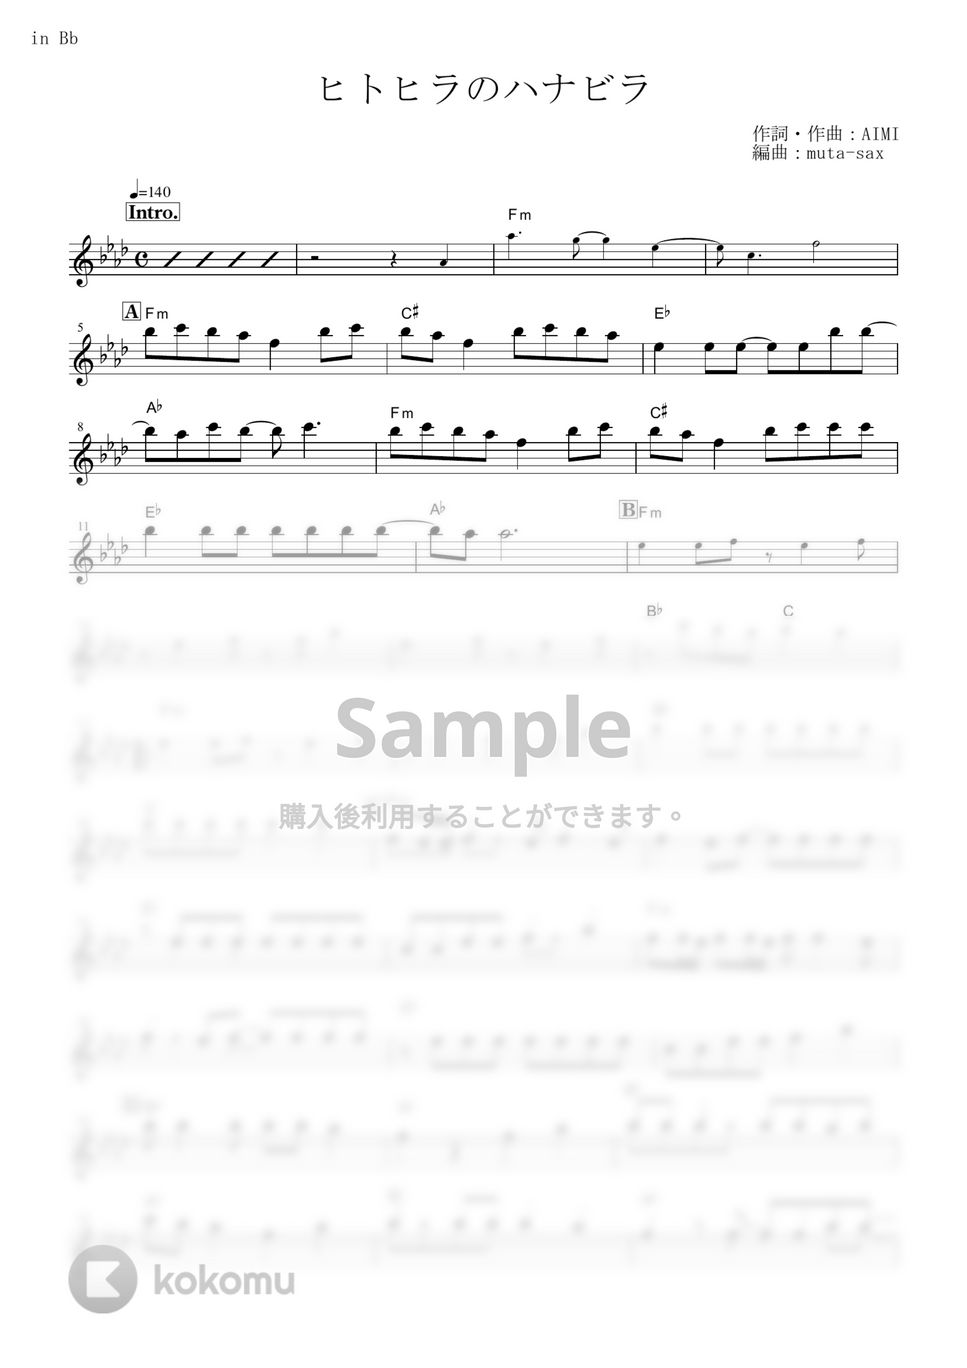 ステレオポニー - ヒトヒラのハナビラ (『BLEACH』 / in Bb) by muta-sax